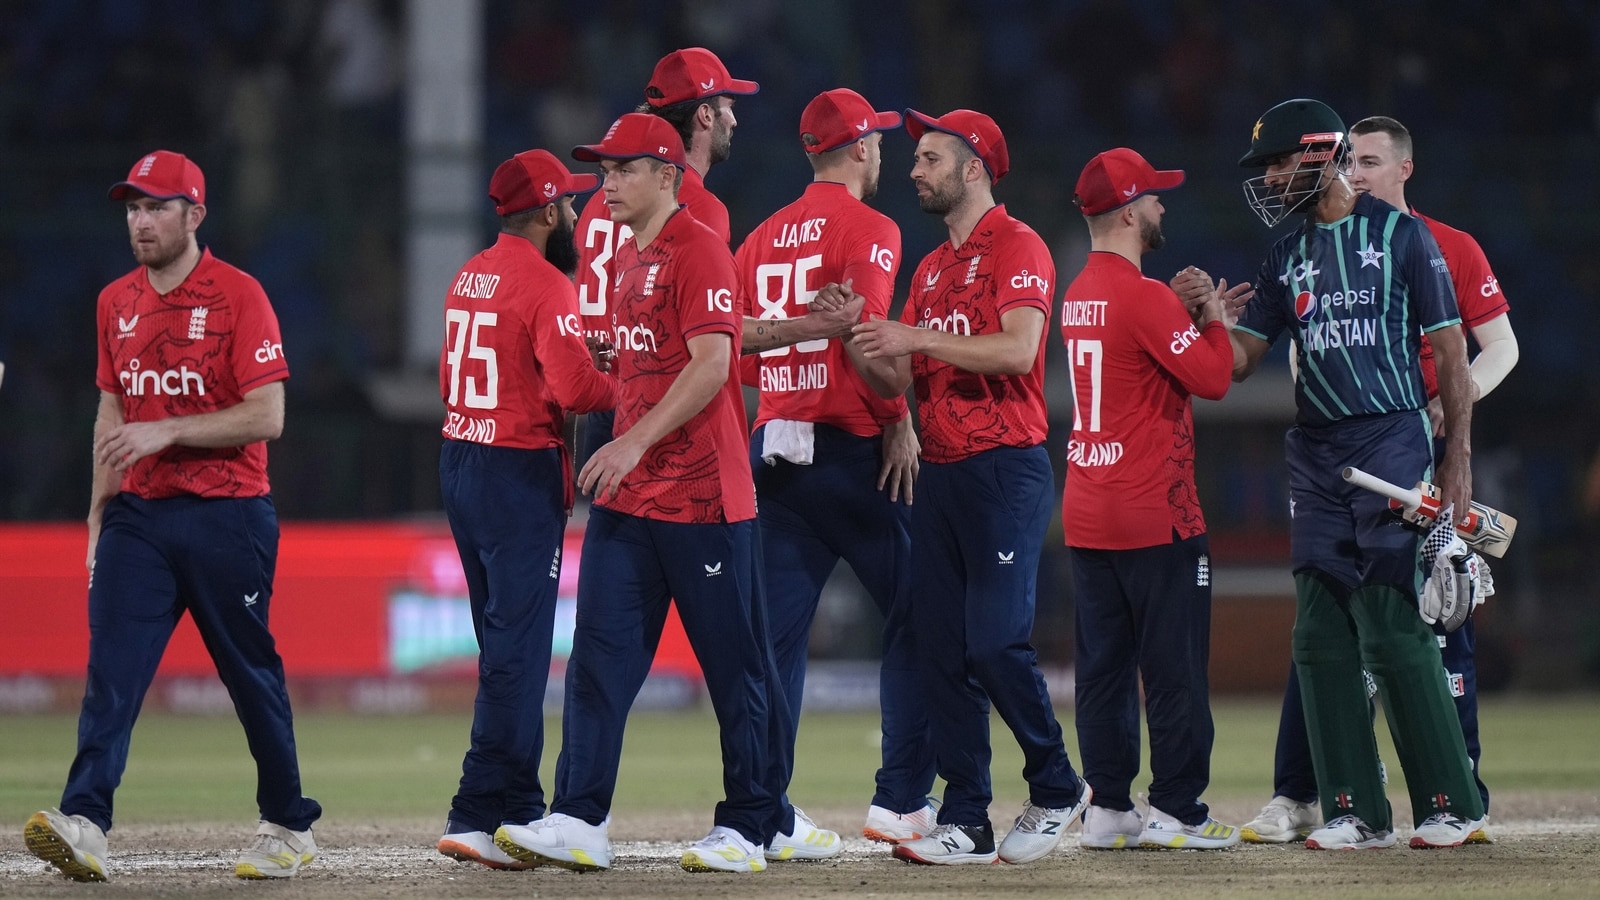 PAK vs ENG: निर्णायक मैच में इंग्लैंड ने निकाली पाकिस्तान की हवा! 67 रन से पाक को हरा कर सात मैचों की सीरीज को 4-3 से किया अपने नाम